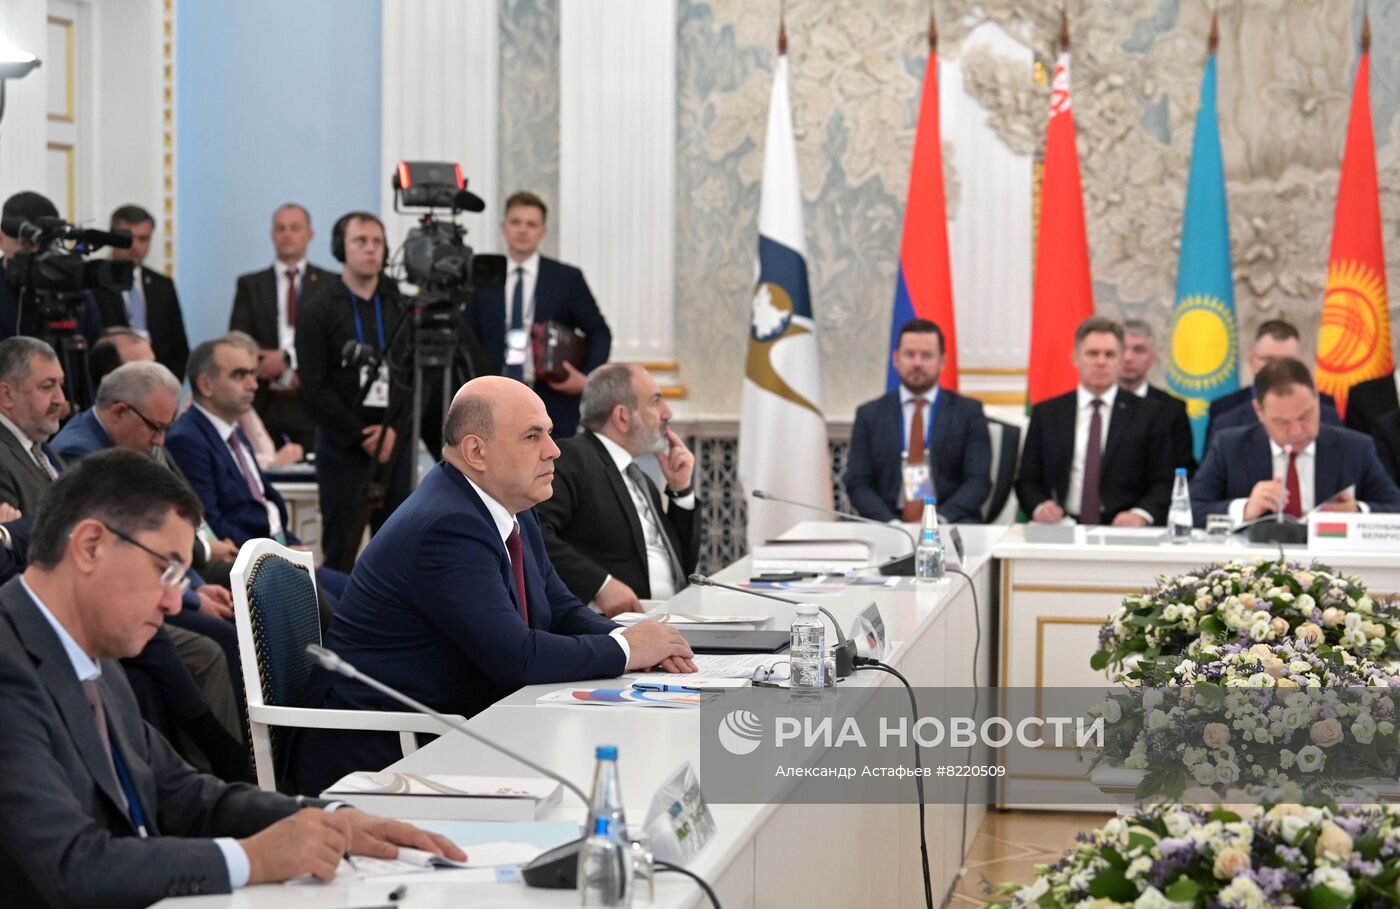 Заседание Евразийского межправительственного совета. День второй